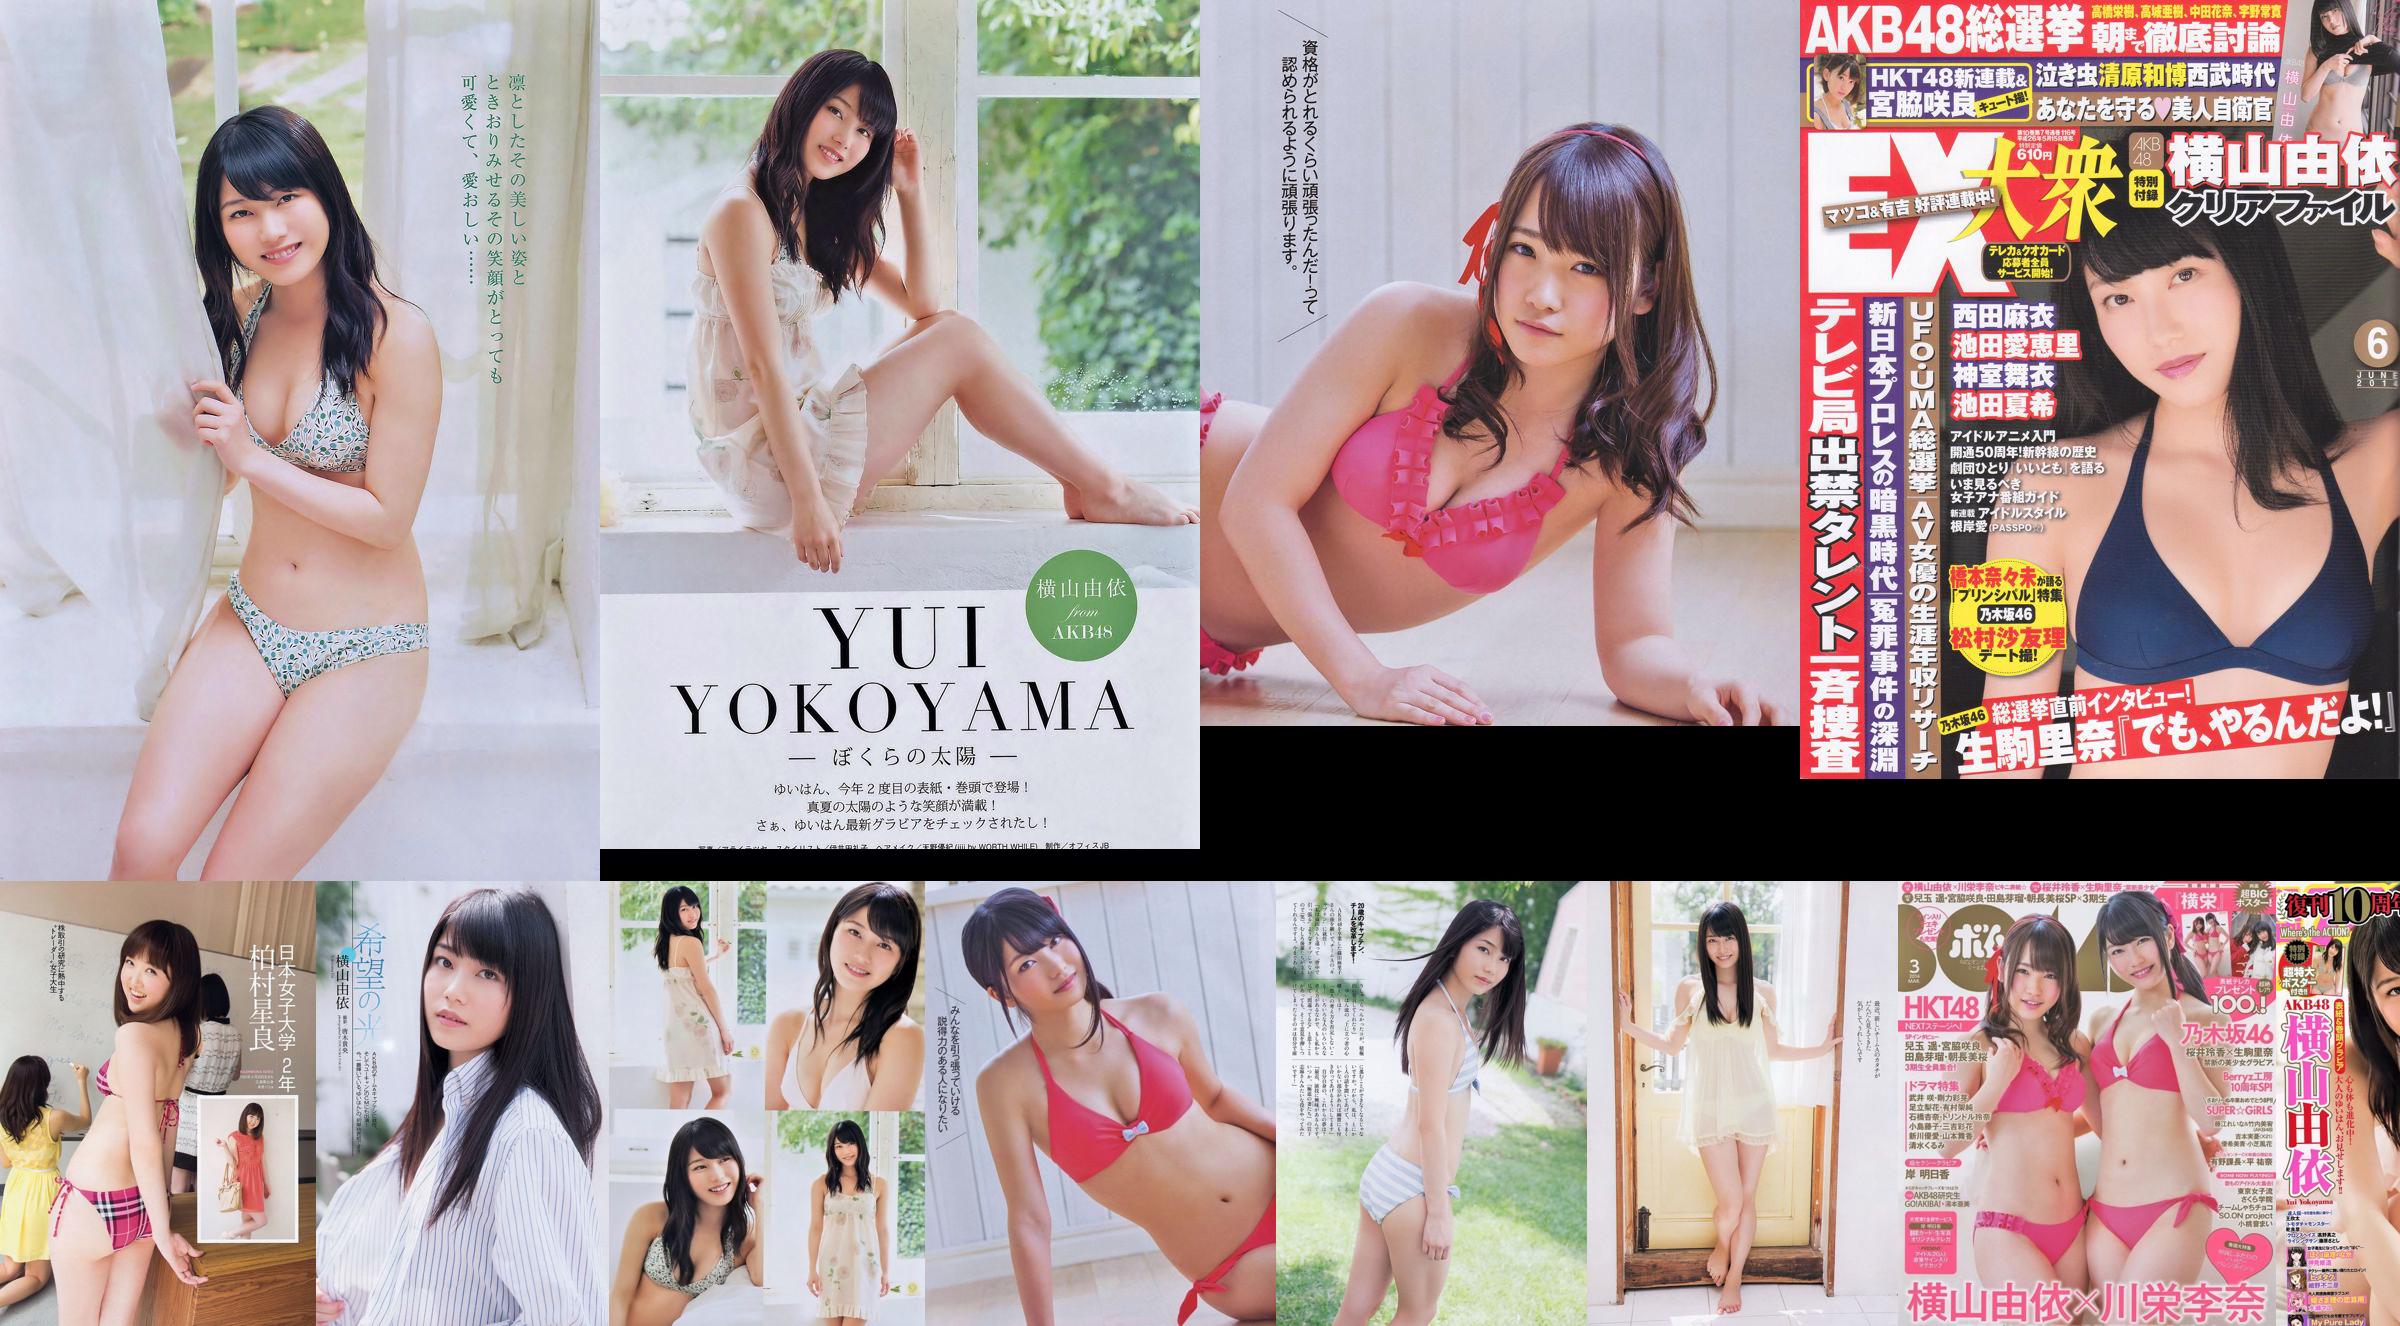 Momoiro Clover Z Yui Yokoyama Yua Shinkawa Mio Uema Anri Sugihara Kumi Yagami [Weekly Playboy] 2013 No.20 Photo Moshi No.3f3b2f Trang 11